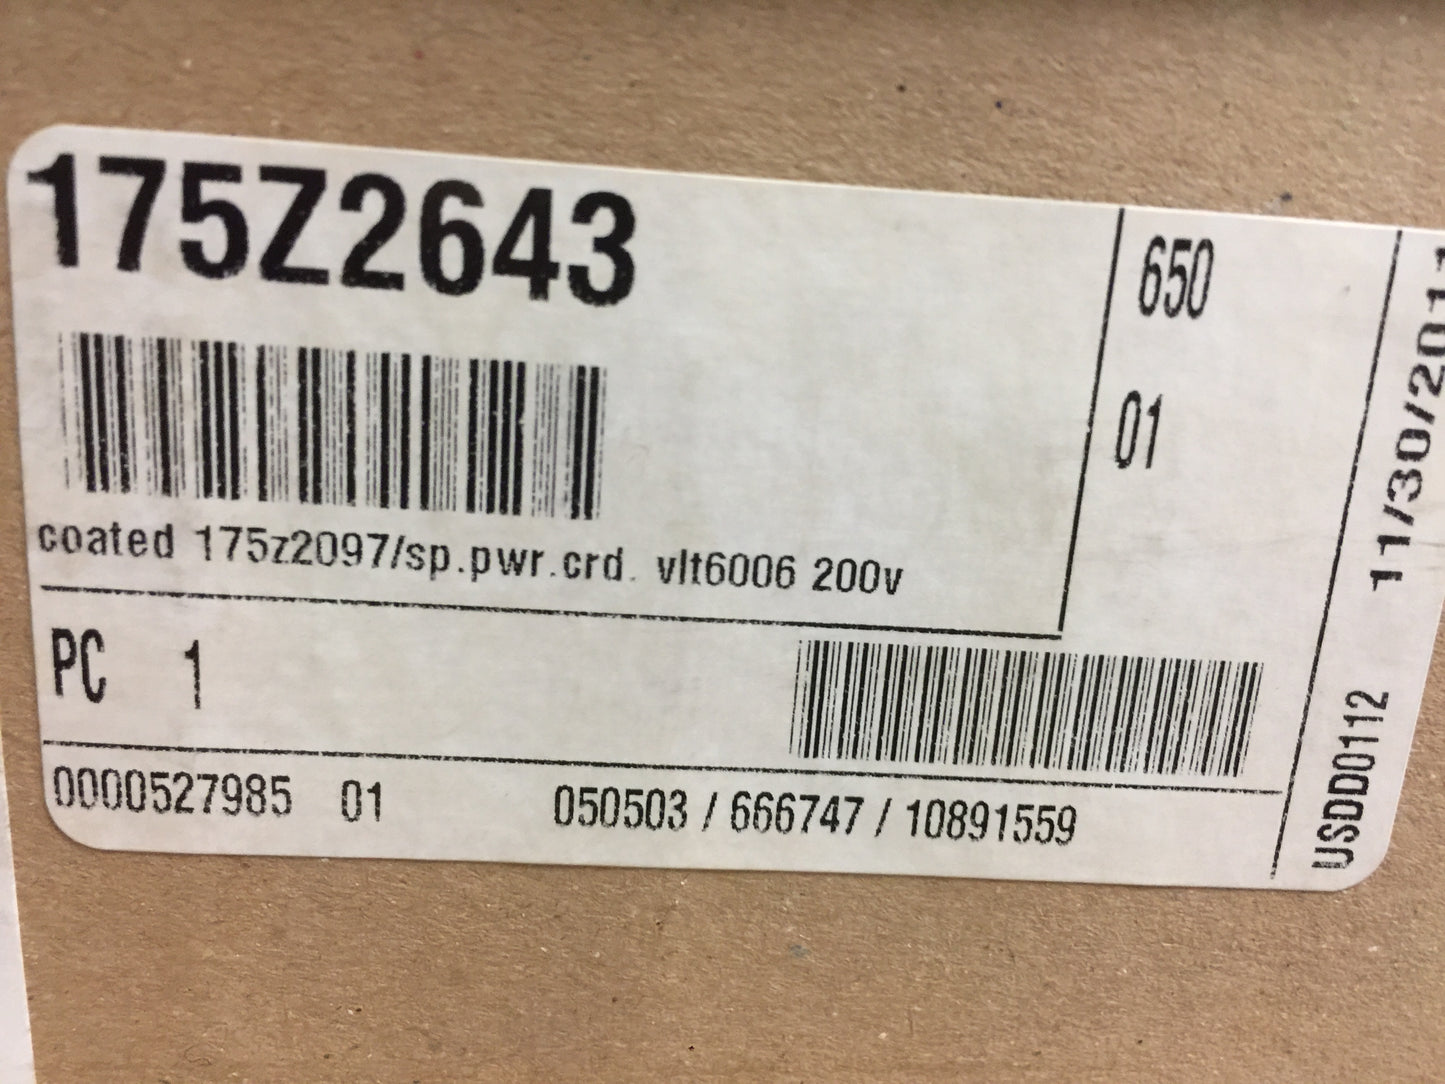 CONTROL BOARD; SPARE POWER CARD, 5006-A/VLT6006, 200-240V